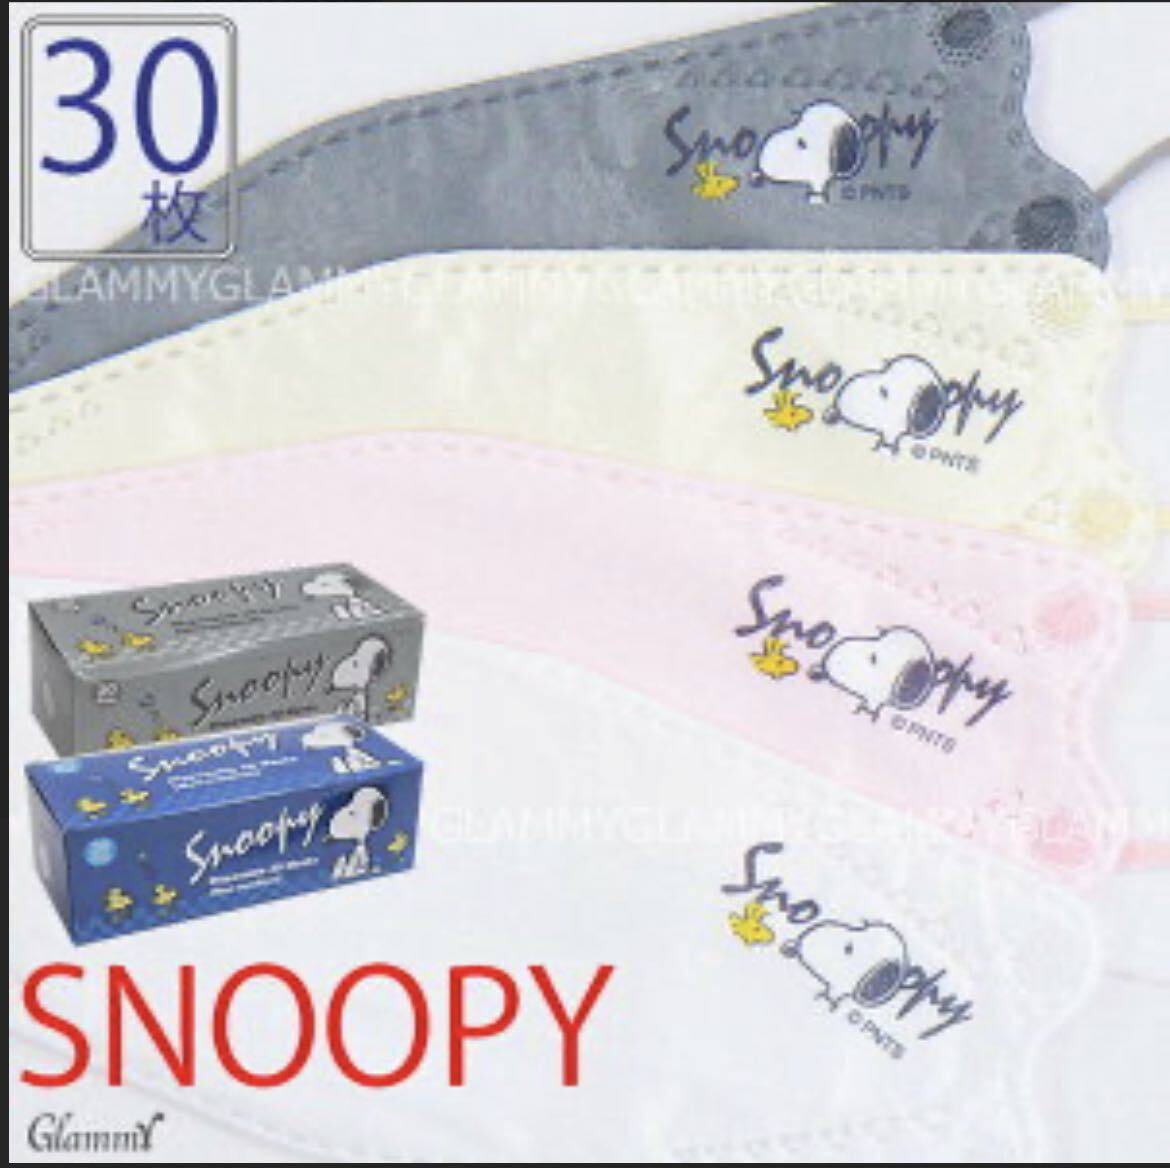 SNOOPY Snoopy 3D4 слой нетканый материал маска 2 коробка 60 листов шт упаковка нетканый материал постоянный маска цельный 3 цвет mask 3 цвет бриллиант цельный 4 слой гигиенические товары 